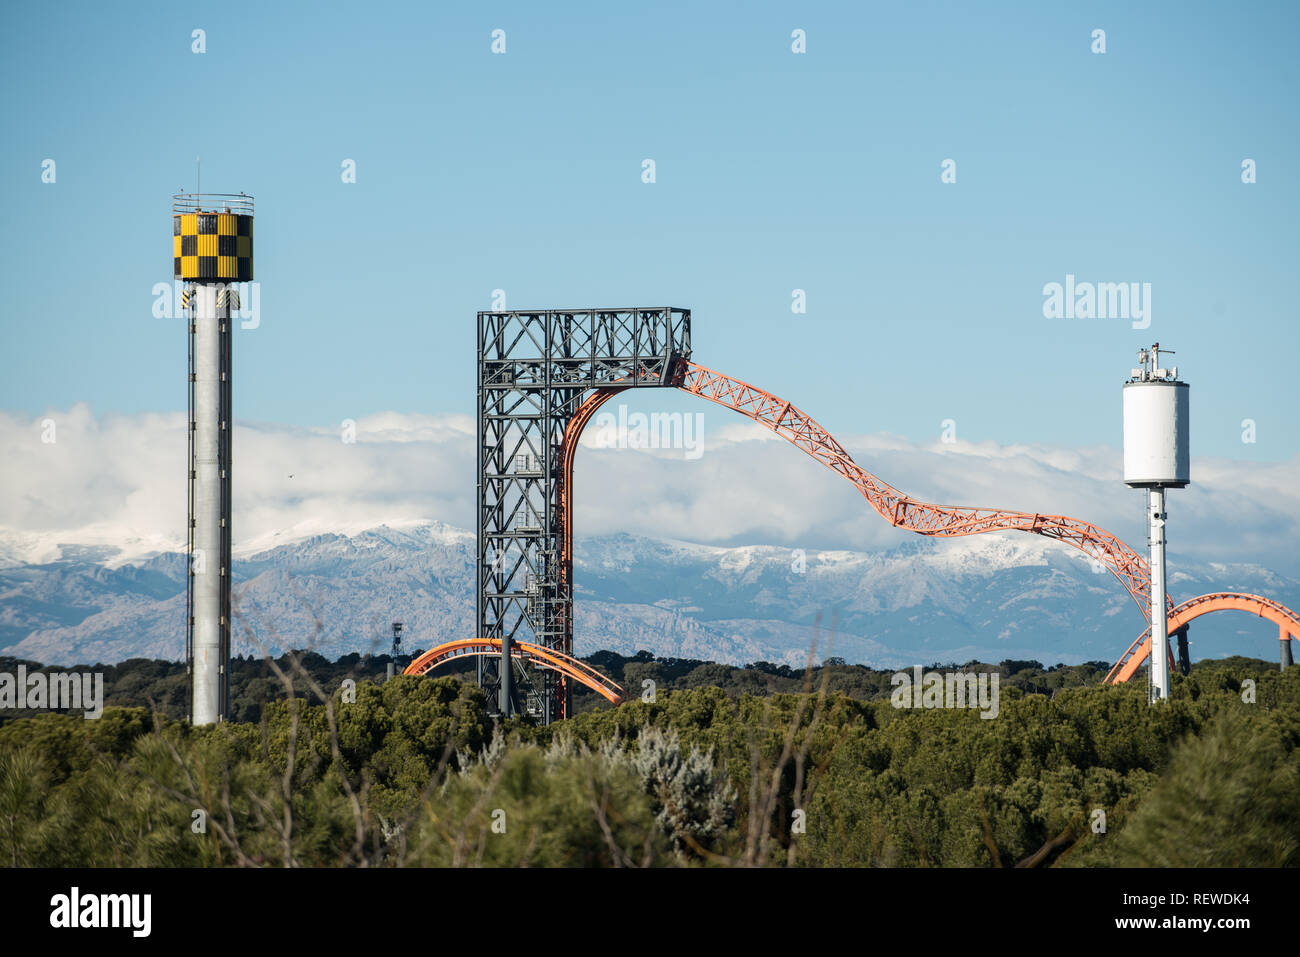 Parque de attractiones, Madrid, Janvier 2019 Banque D'Images